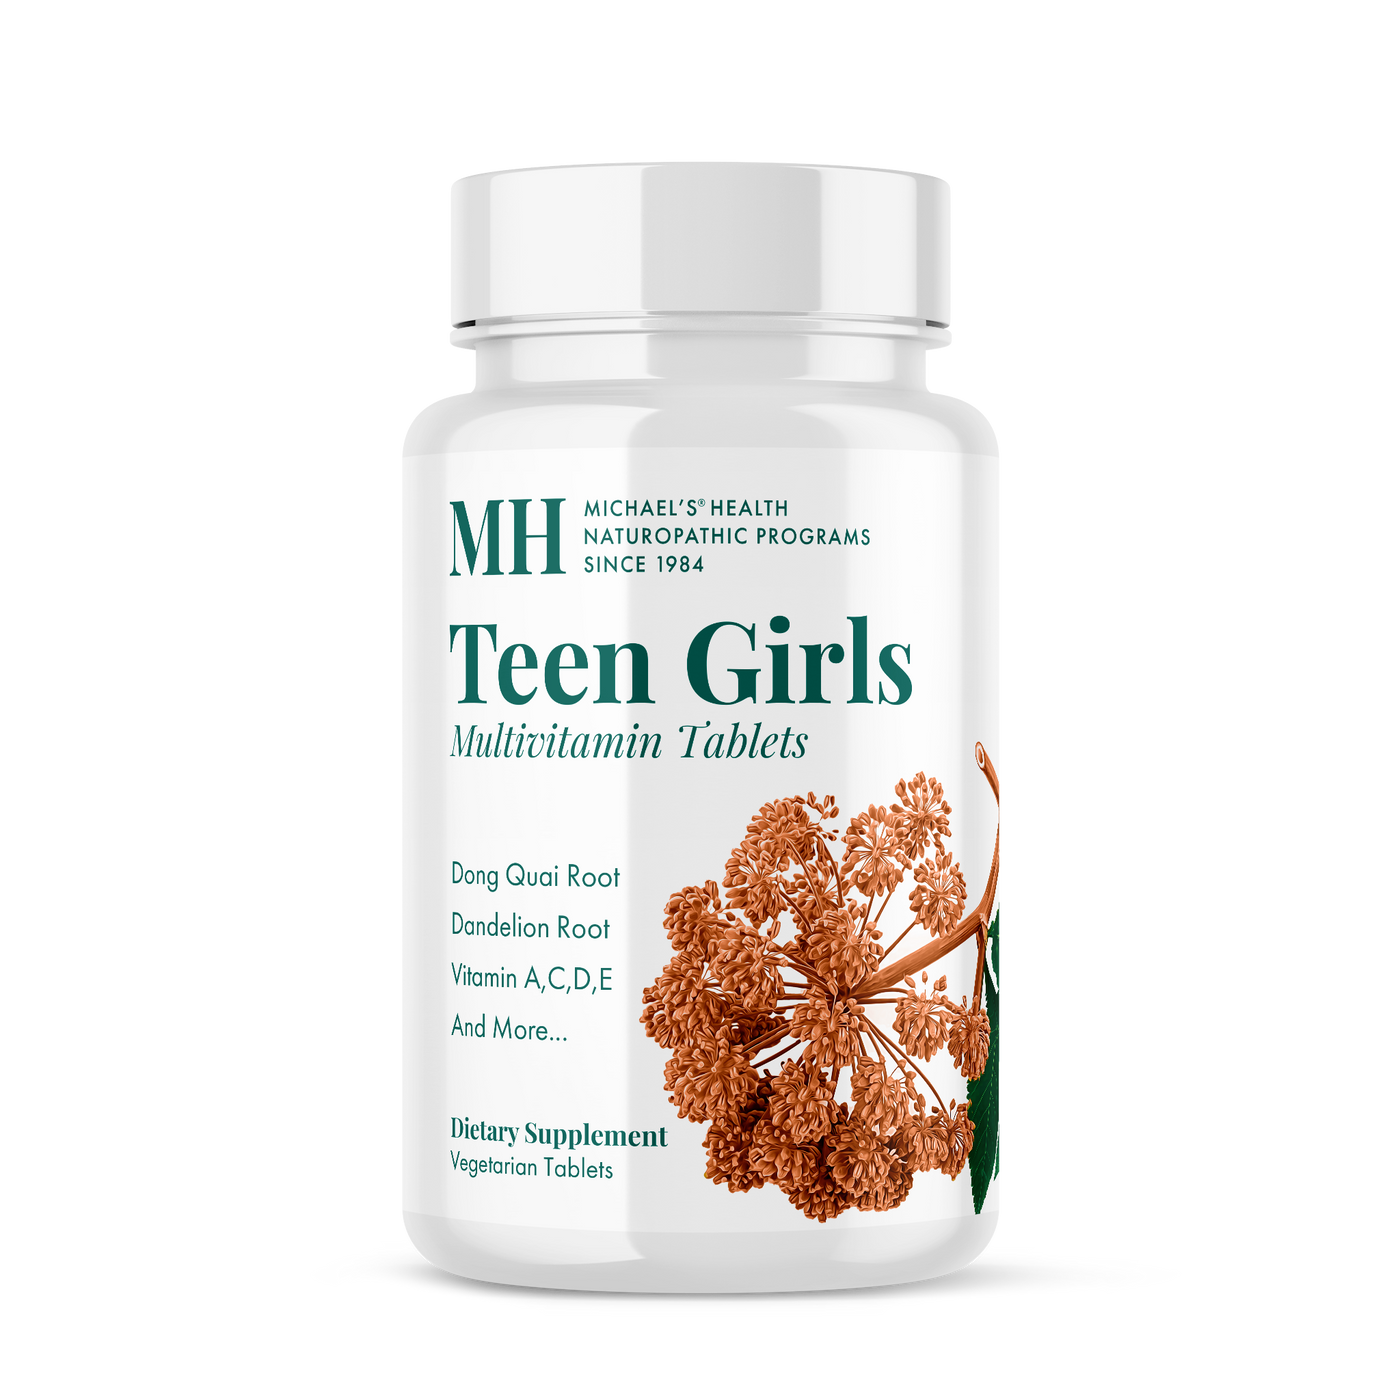 Teen Girls Multivitamin Tablets